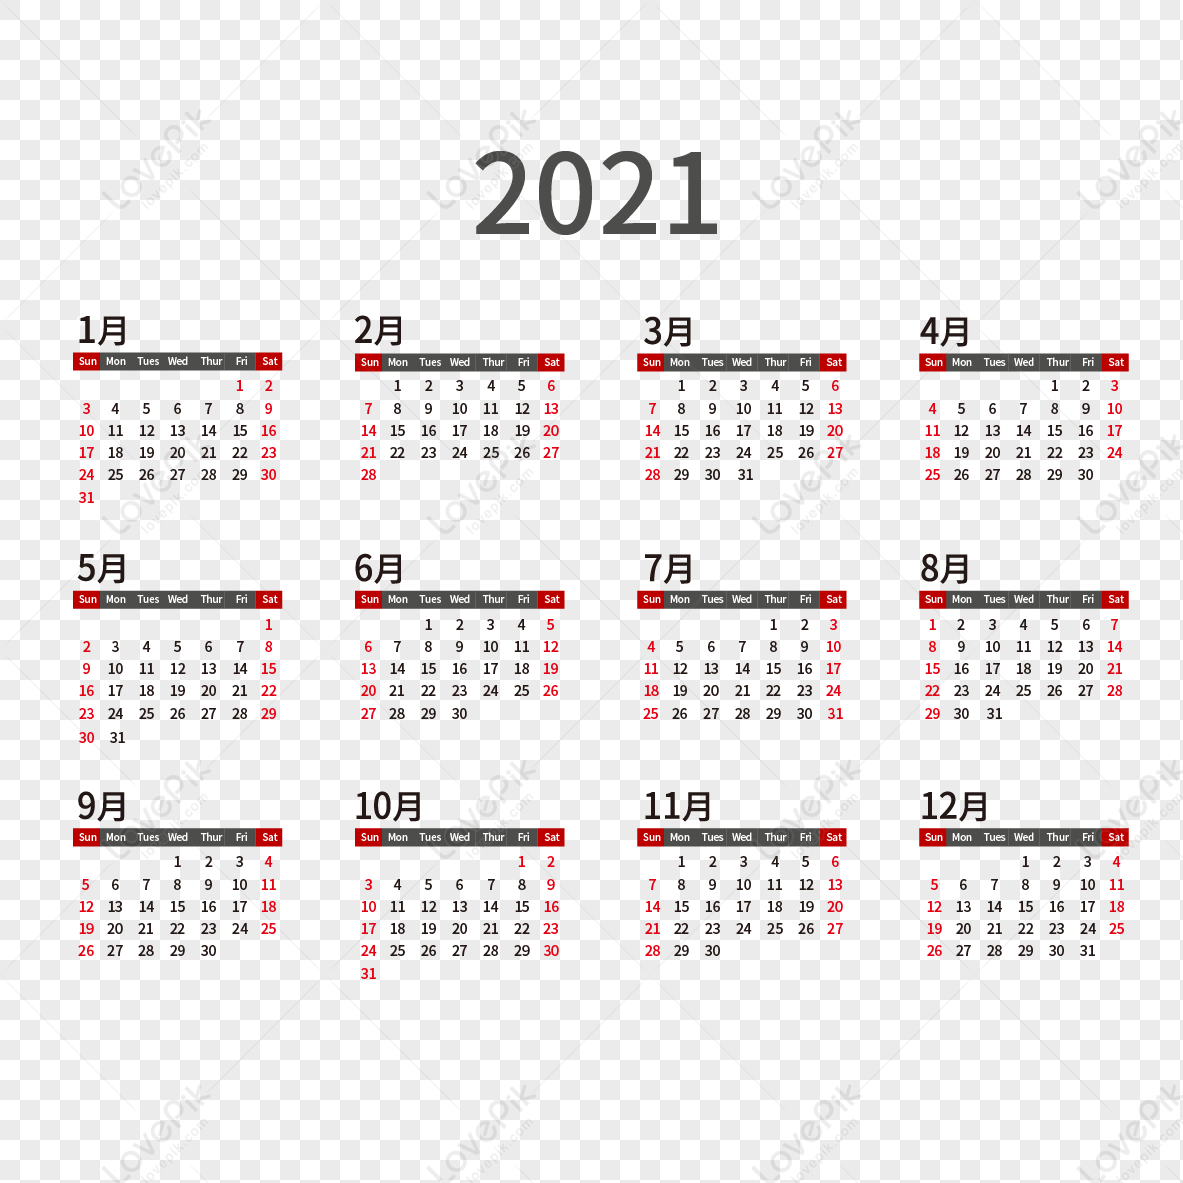 2021 desk calendar, date, desk, calendar png transparent image